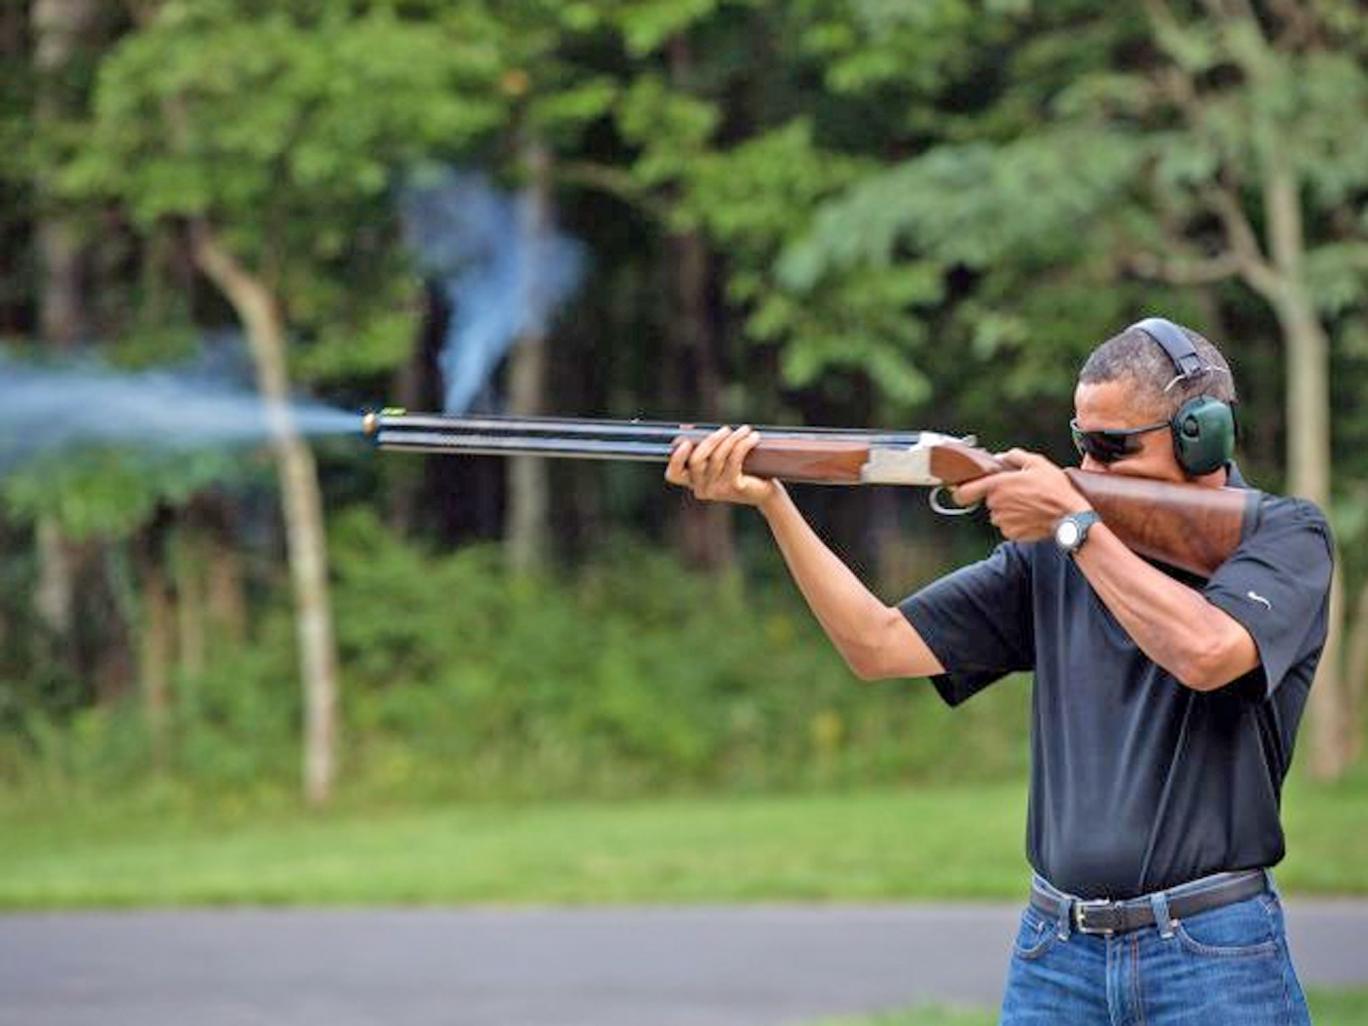 Obama gun